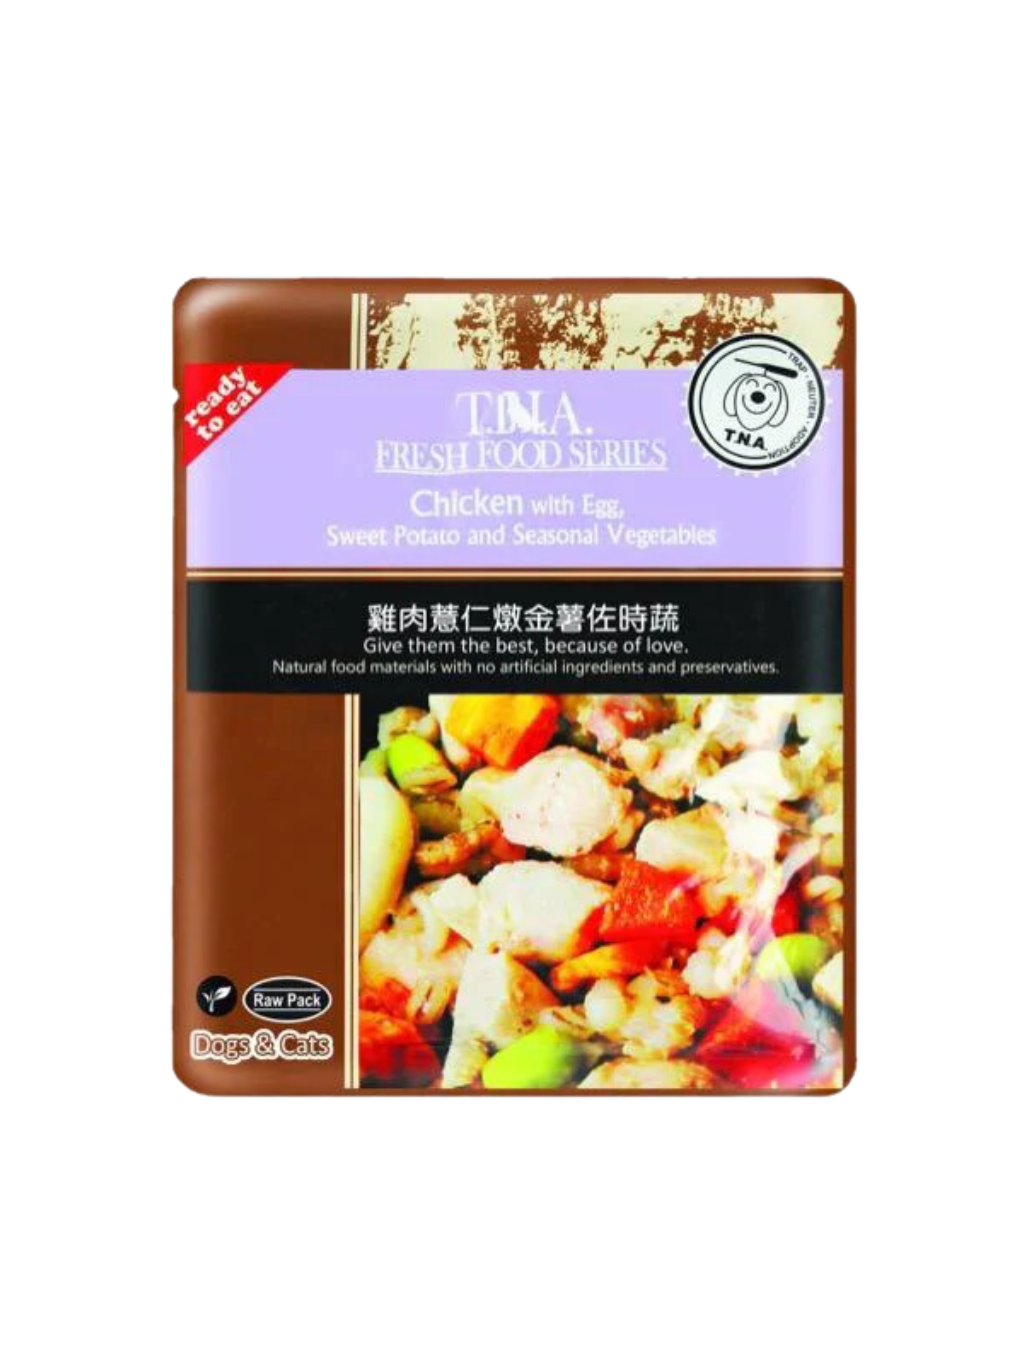 T.N.A. l 悠遊餐包系列 台灣鮮雞燉薏仁金薯伴時蔬 150g